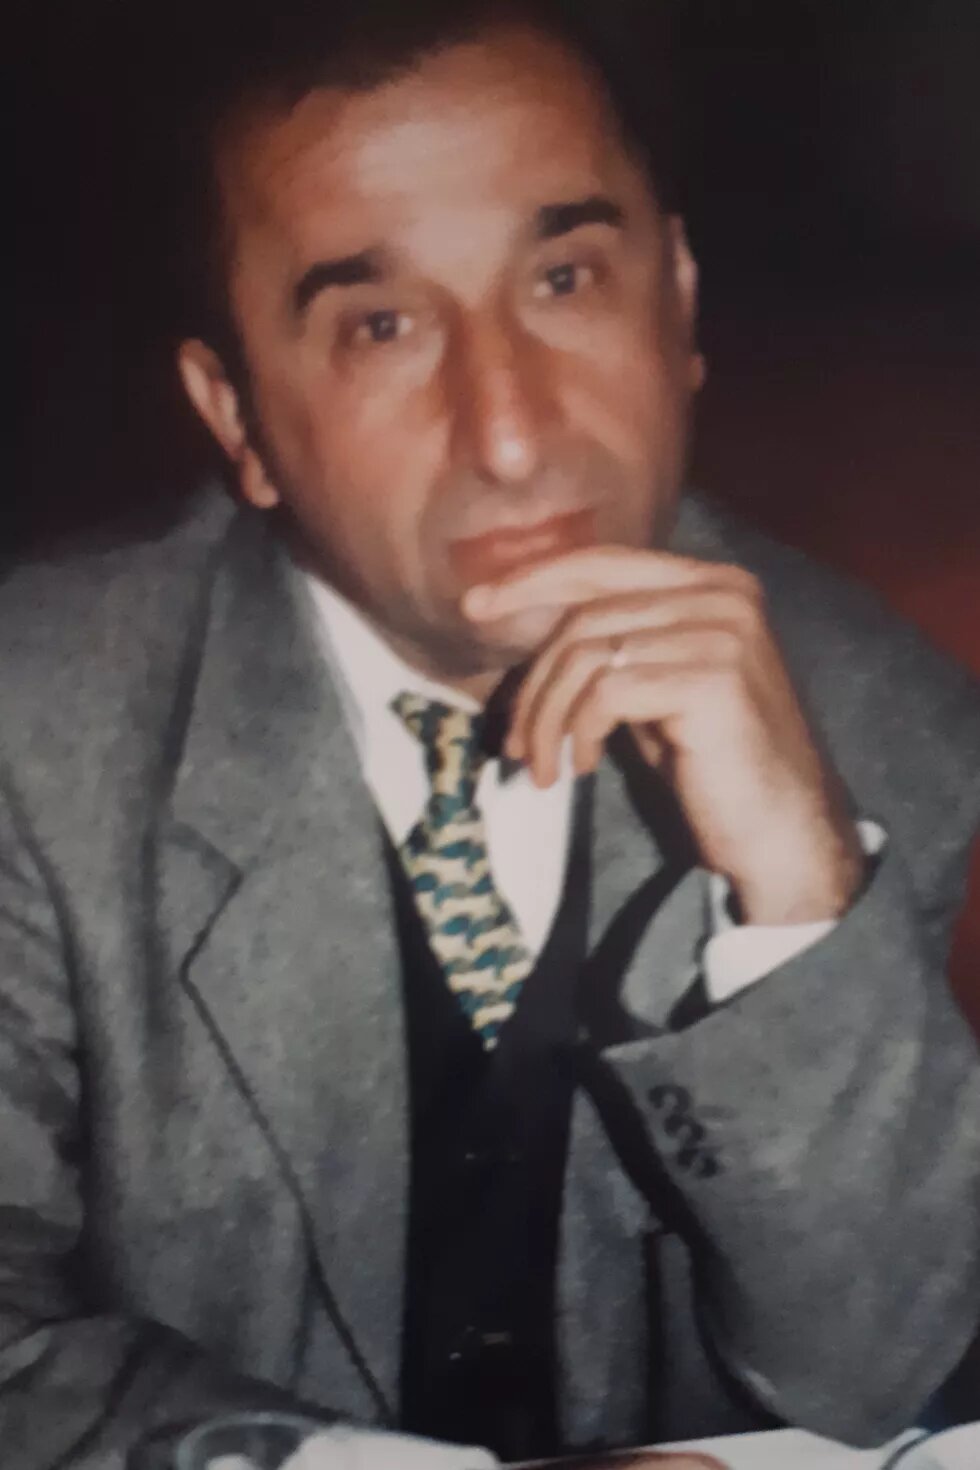 Mehmet Kılıçgedik